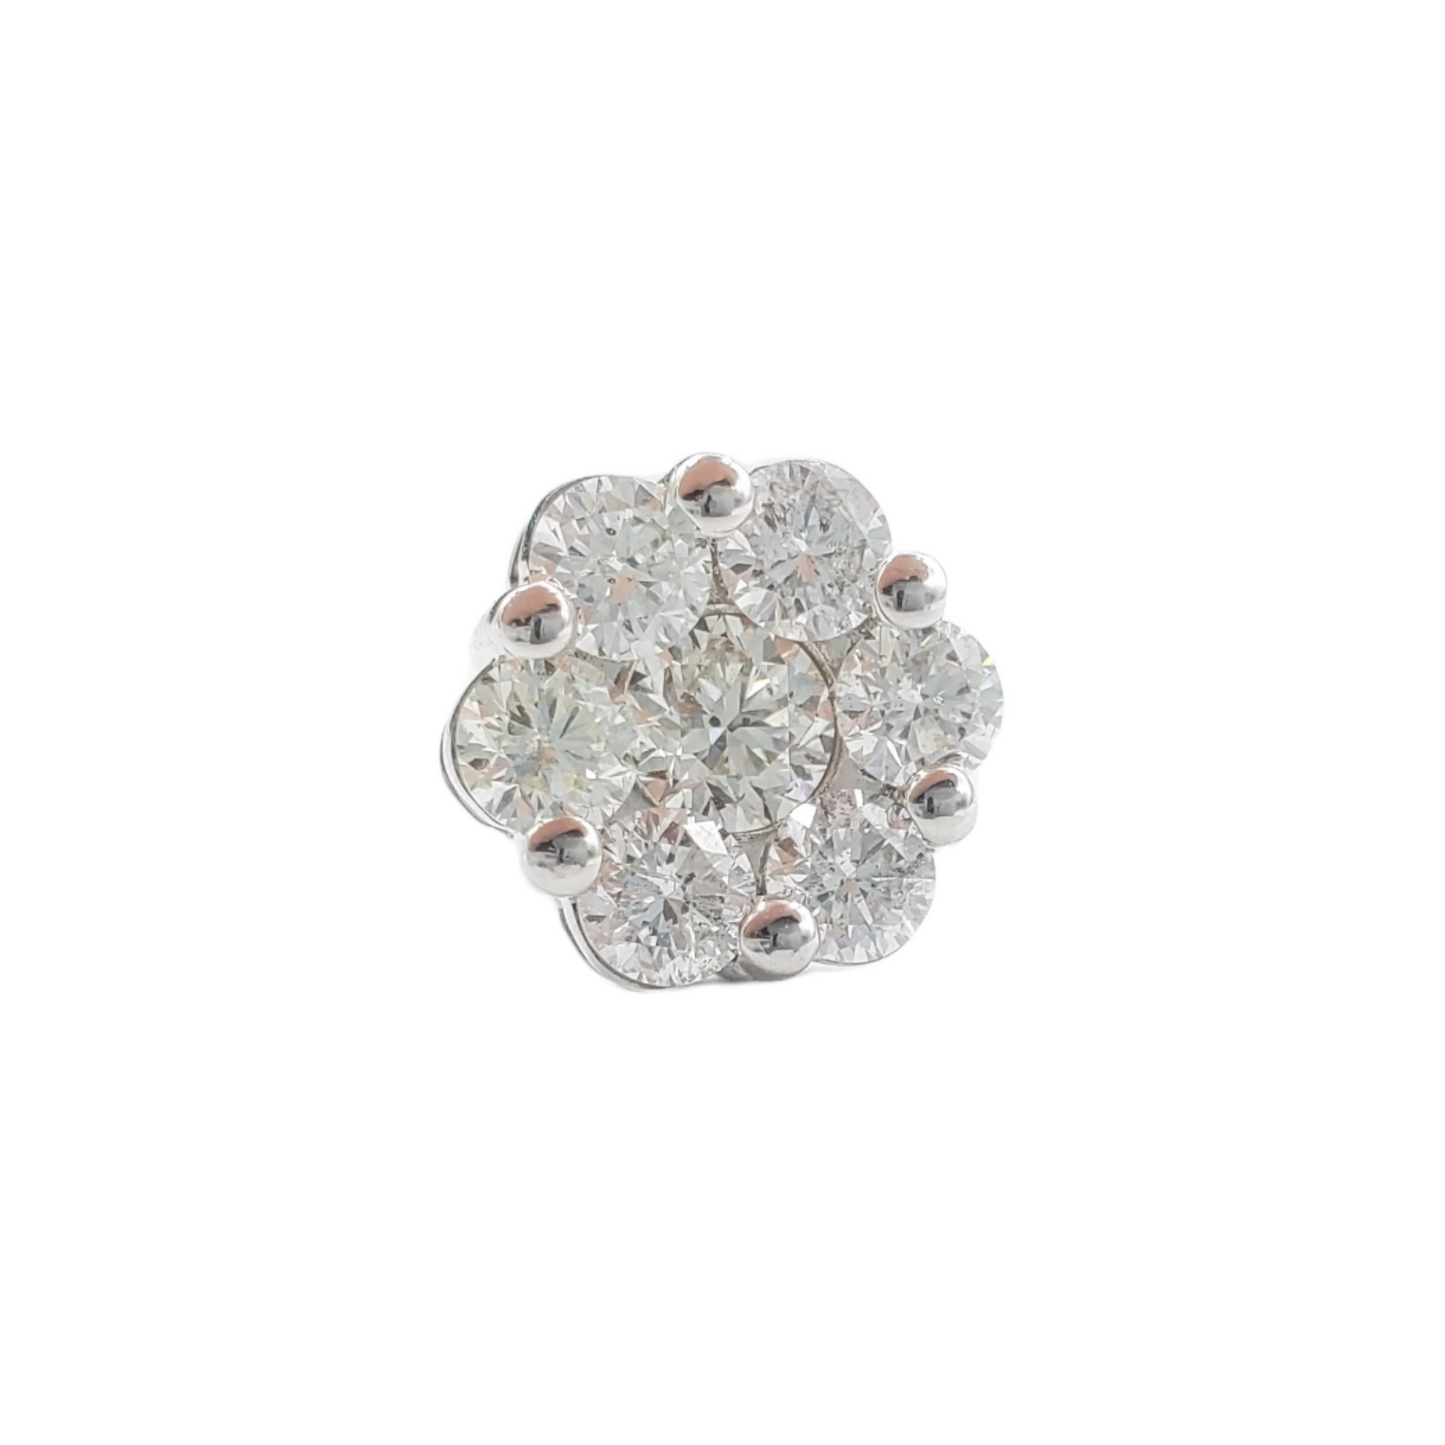 14k White Gold Diamond Flower Earrings #21359